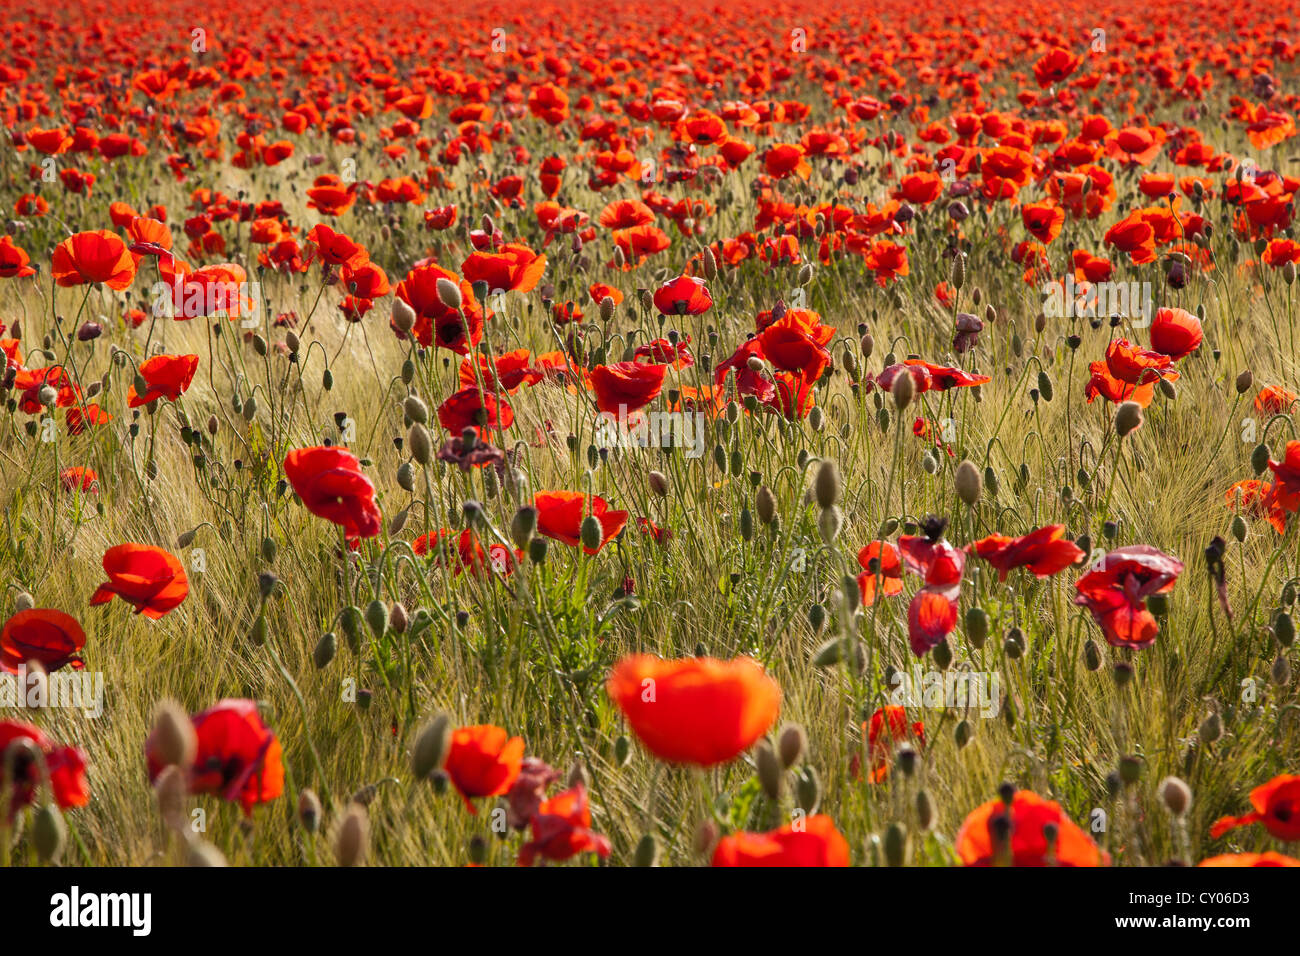 Red poppy field (Papaver rhoeas) in flower, near Berlin Stock Photo